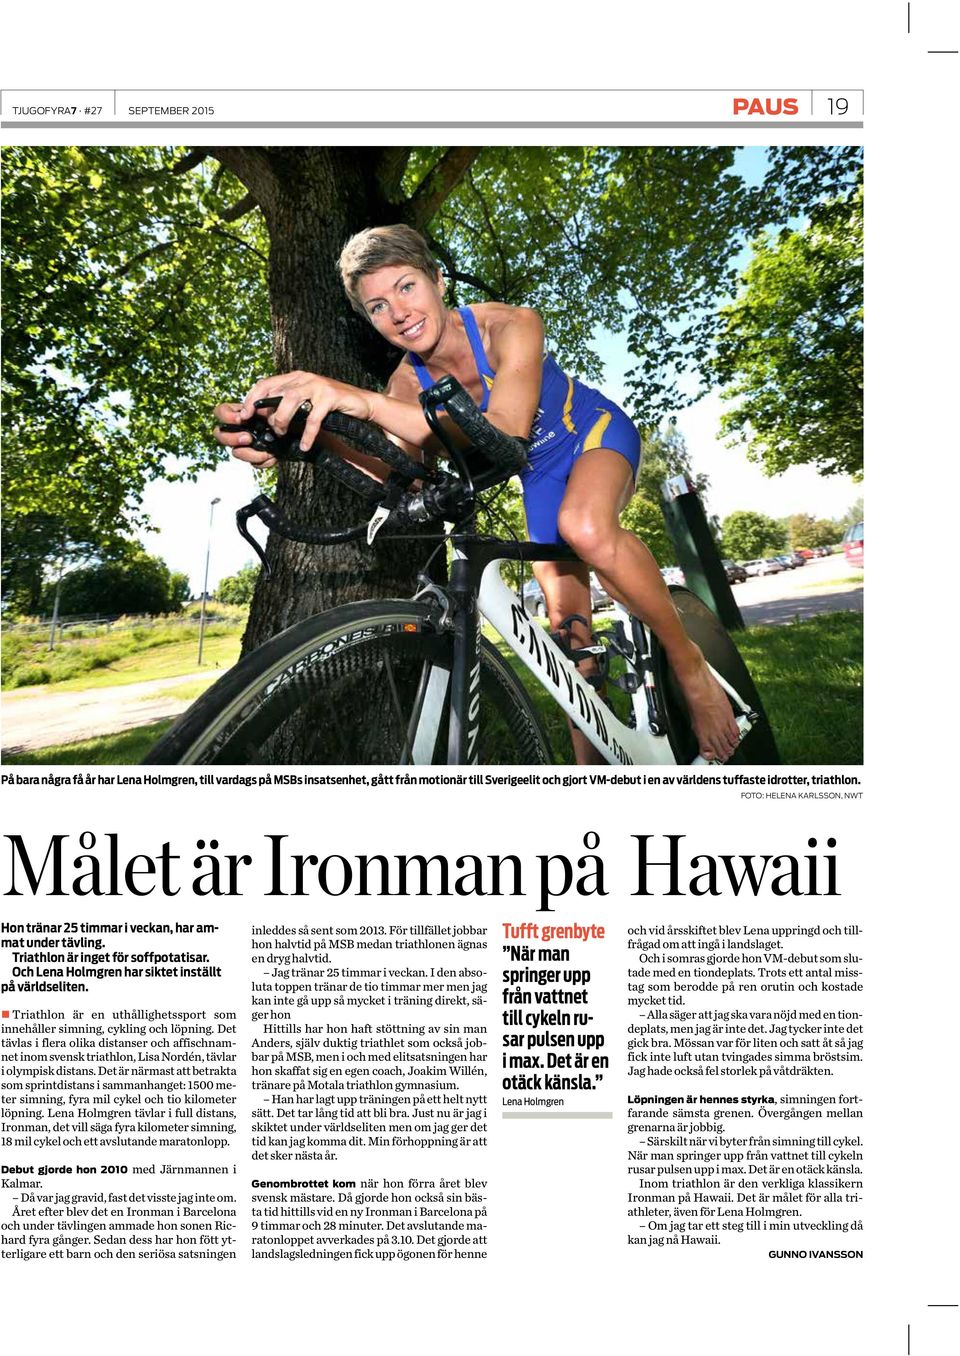 Och Lena Holmgren har siktet inställt på världseliten. Triathlon är en uthållighetssport som innehåller simning, cykling och löpning.